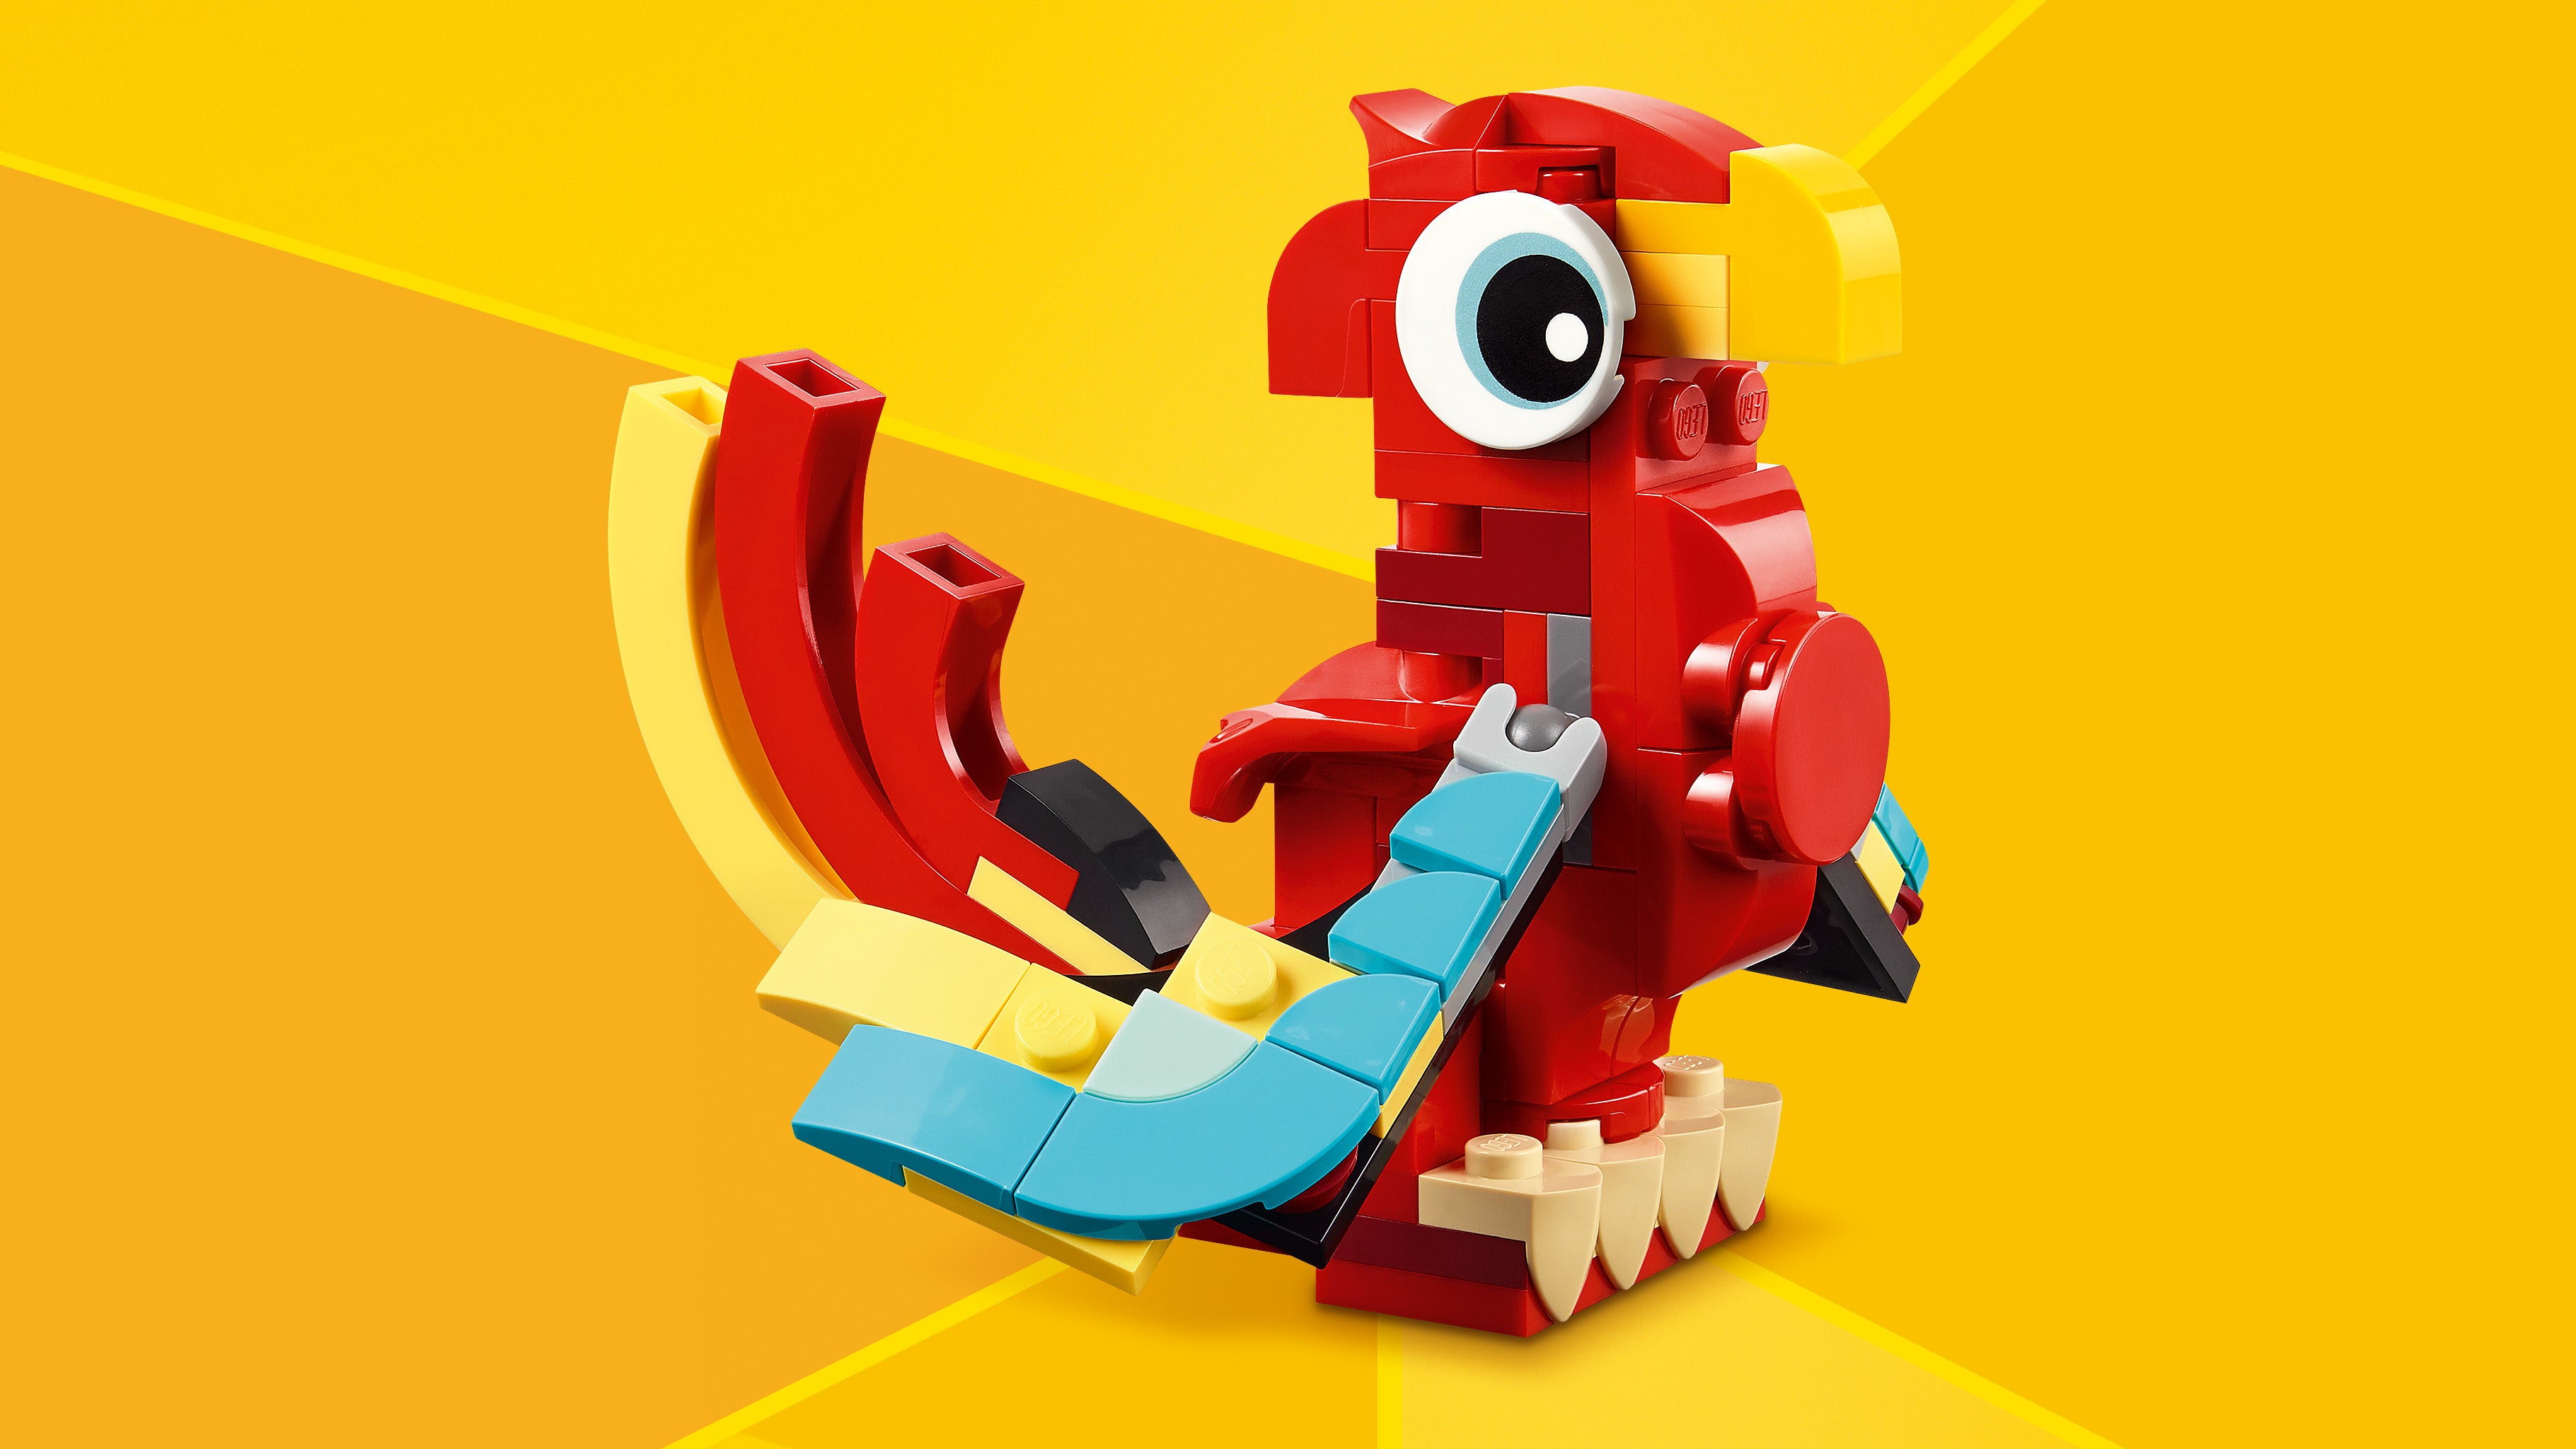 Lego 31145 Red Dragon